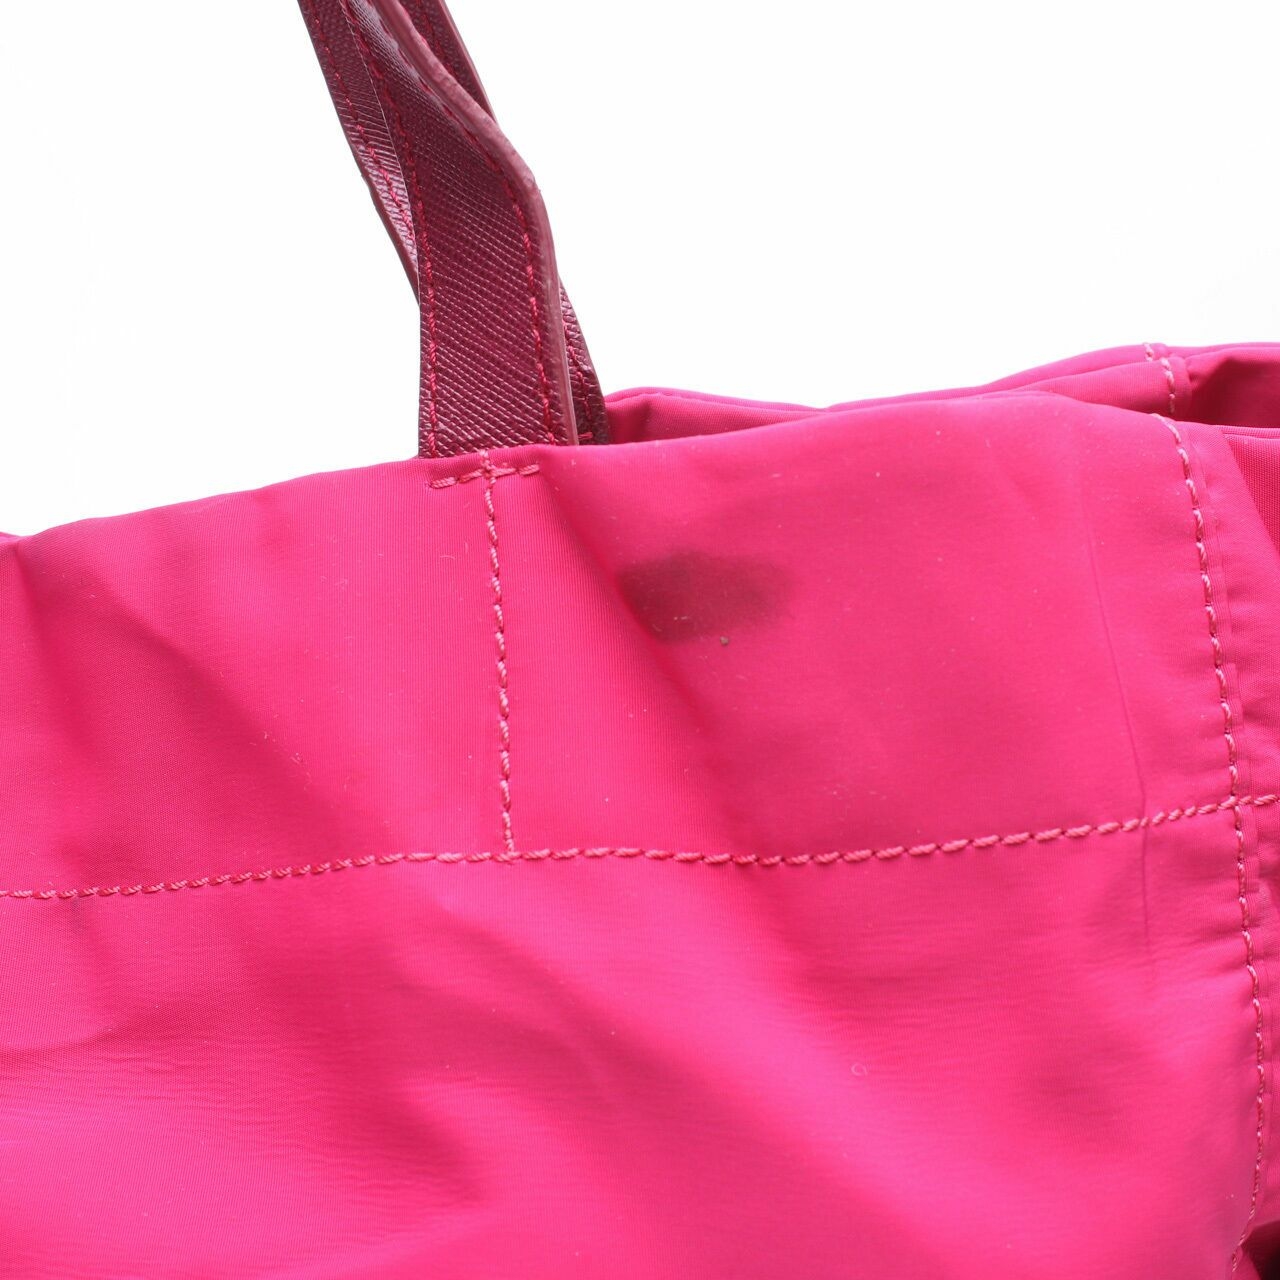 Tory Burch Pink Tote Bag